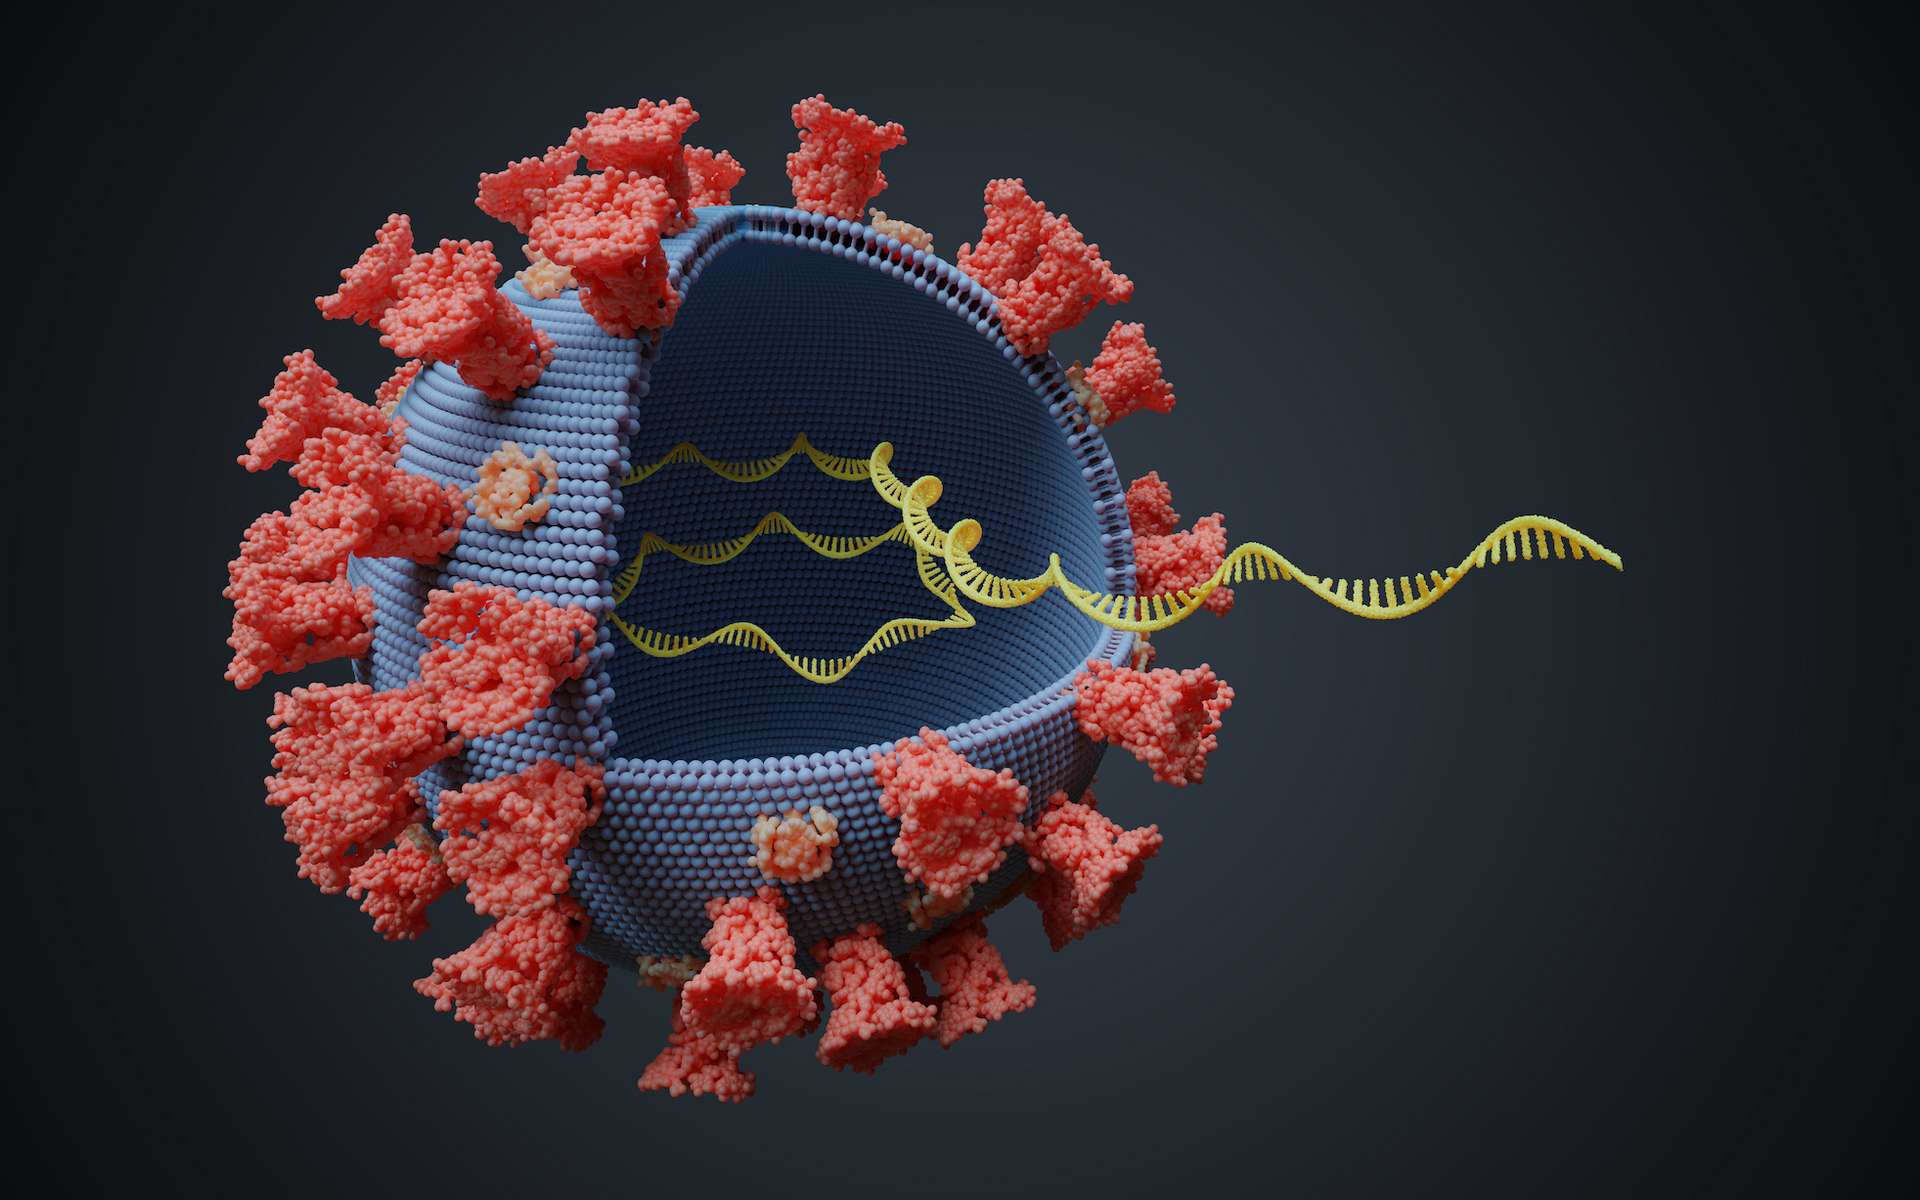 Aujourd'hui, l'ARN messager permet d'élaborer des vaccins contre des virus pathogènes. © Vchalup, Adobe Stock